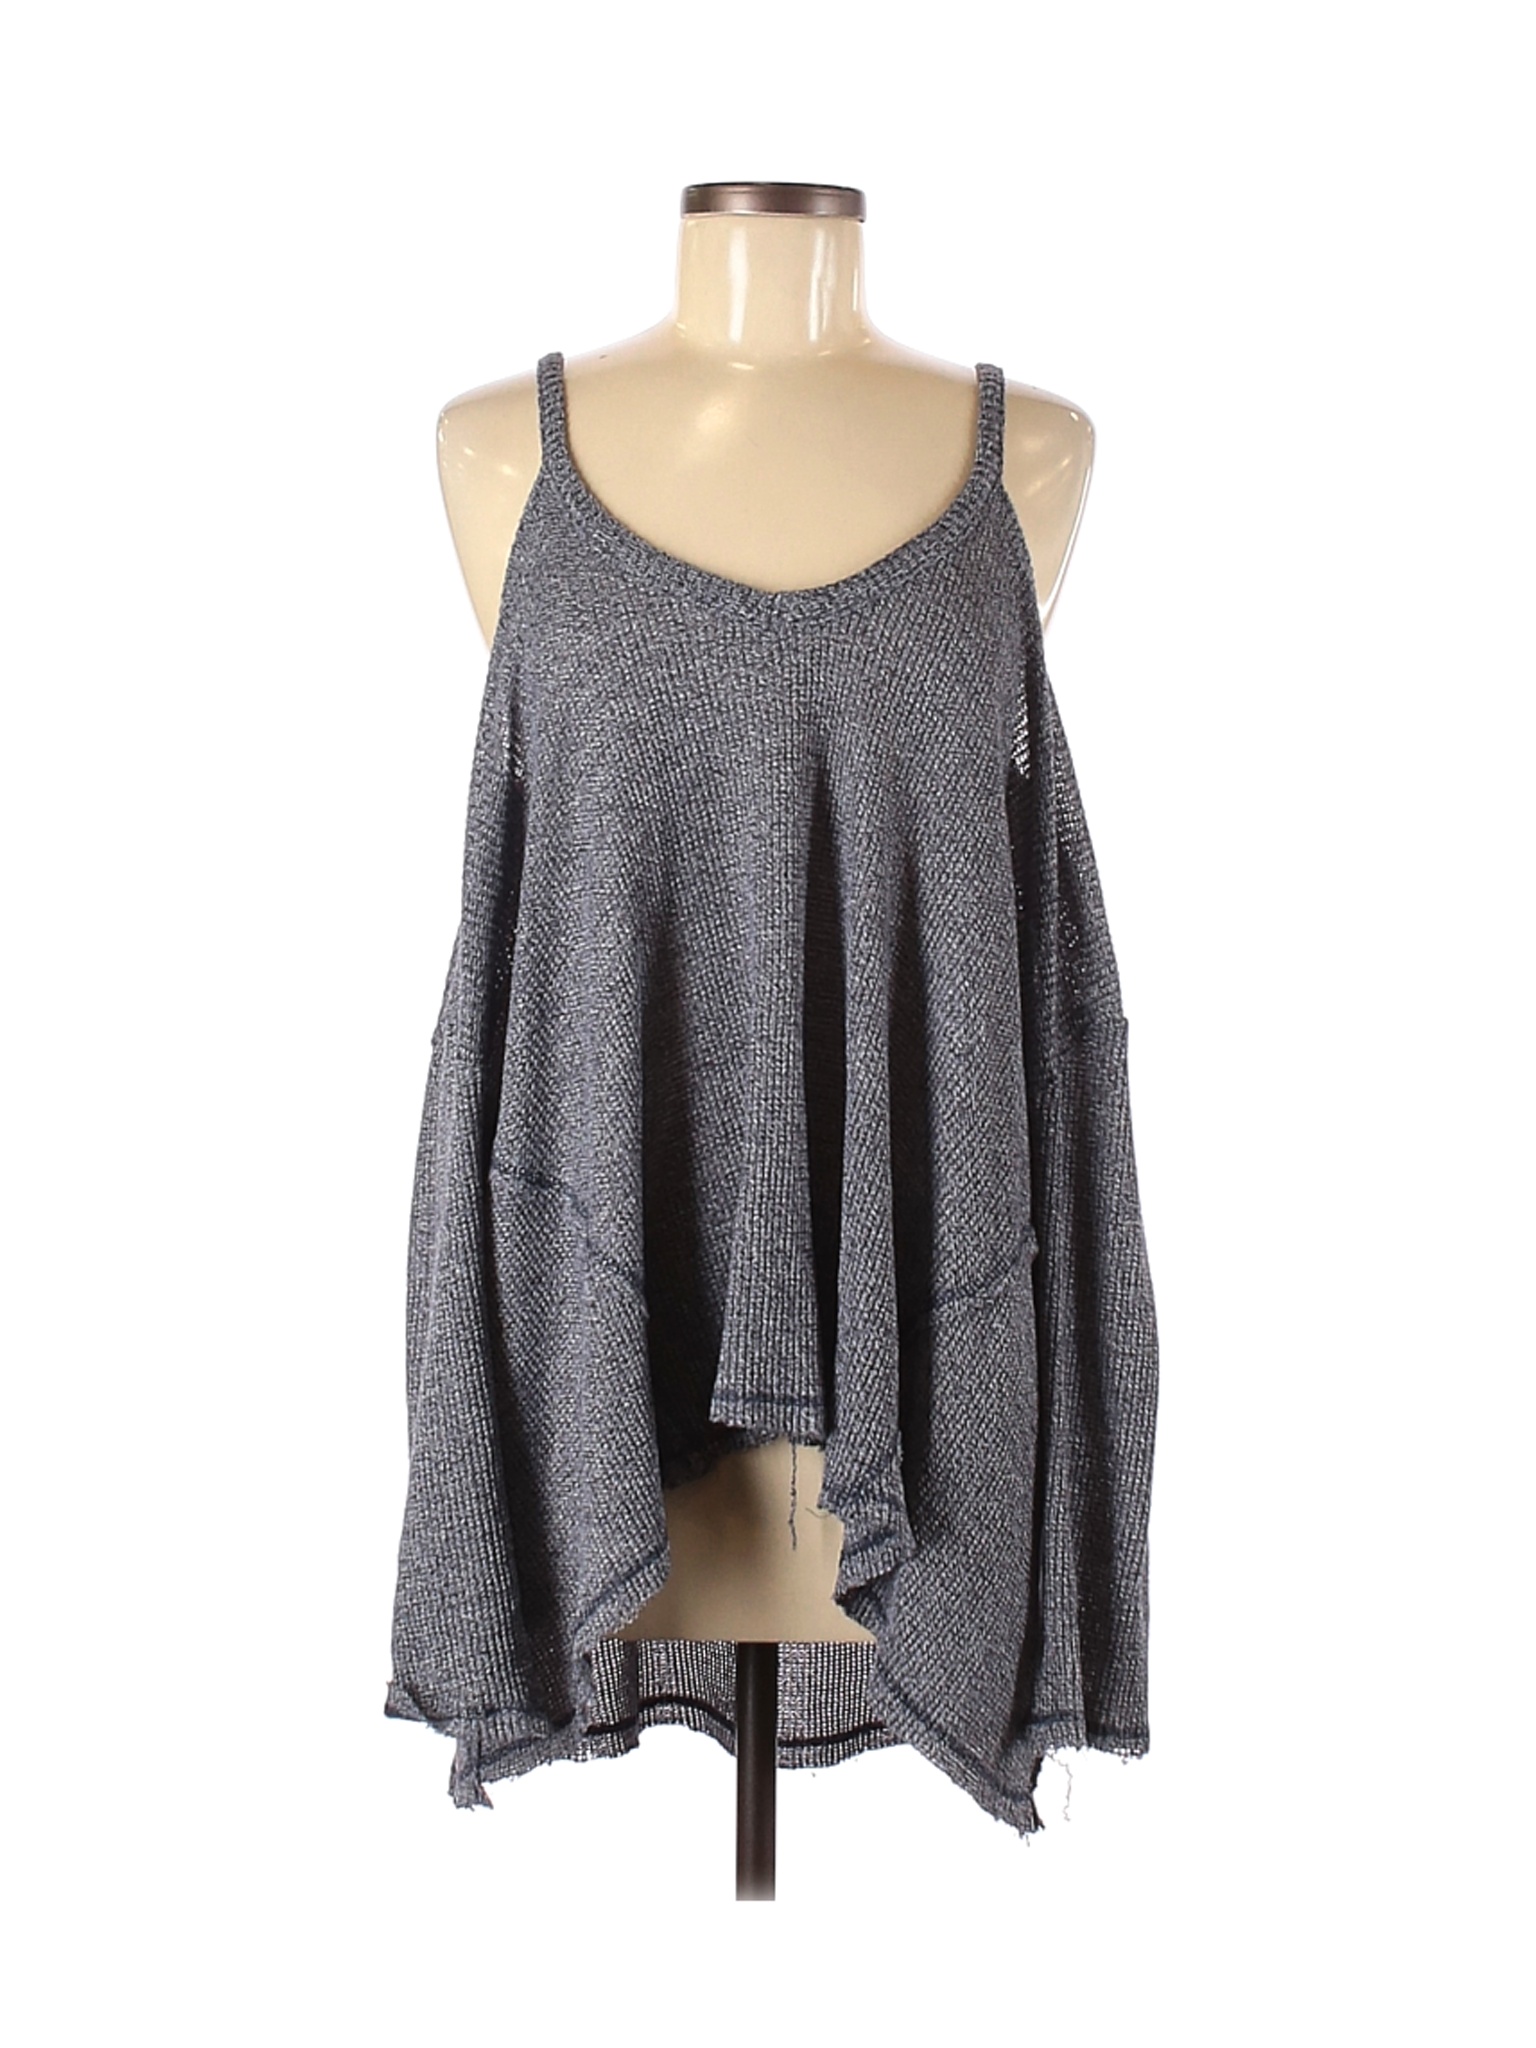 Deletta Women Gray 3/4 Sleeve Top M | eBay